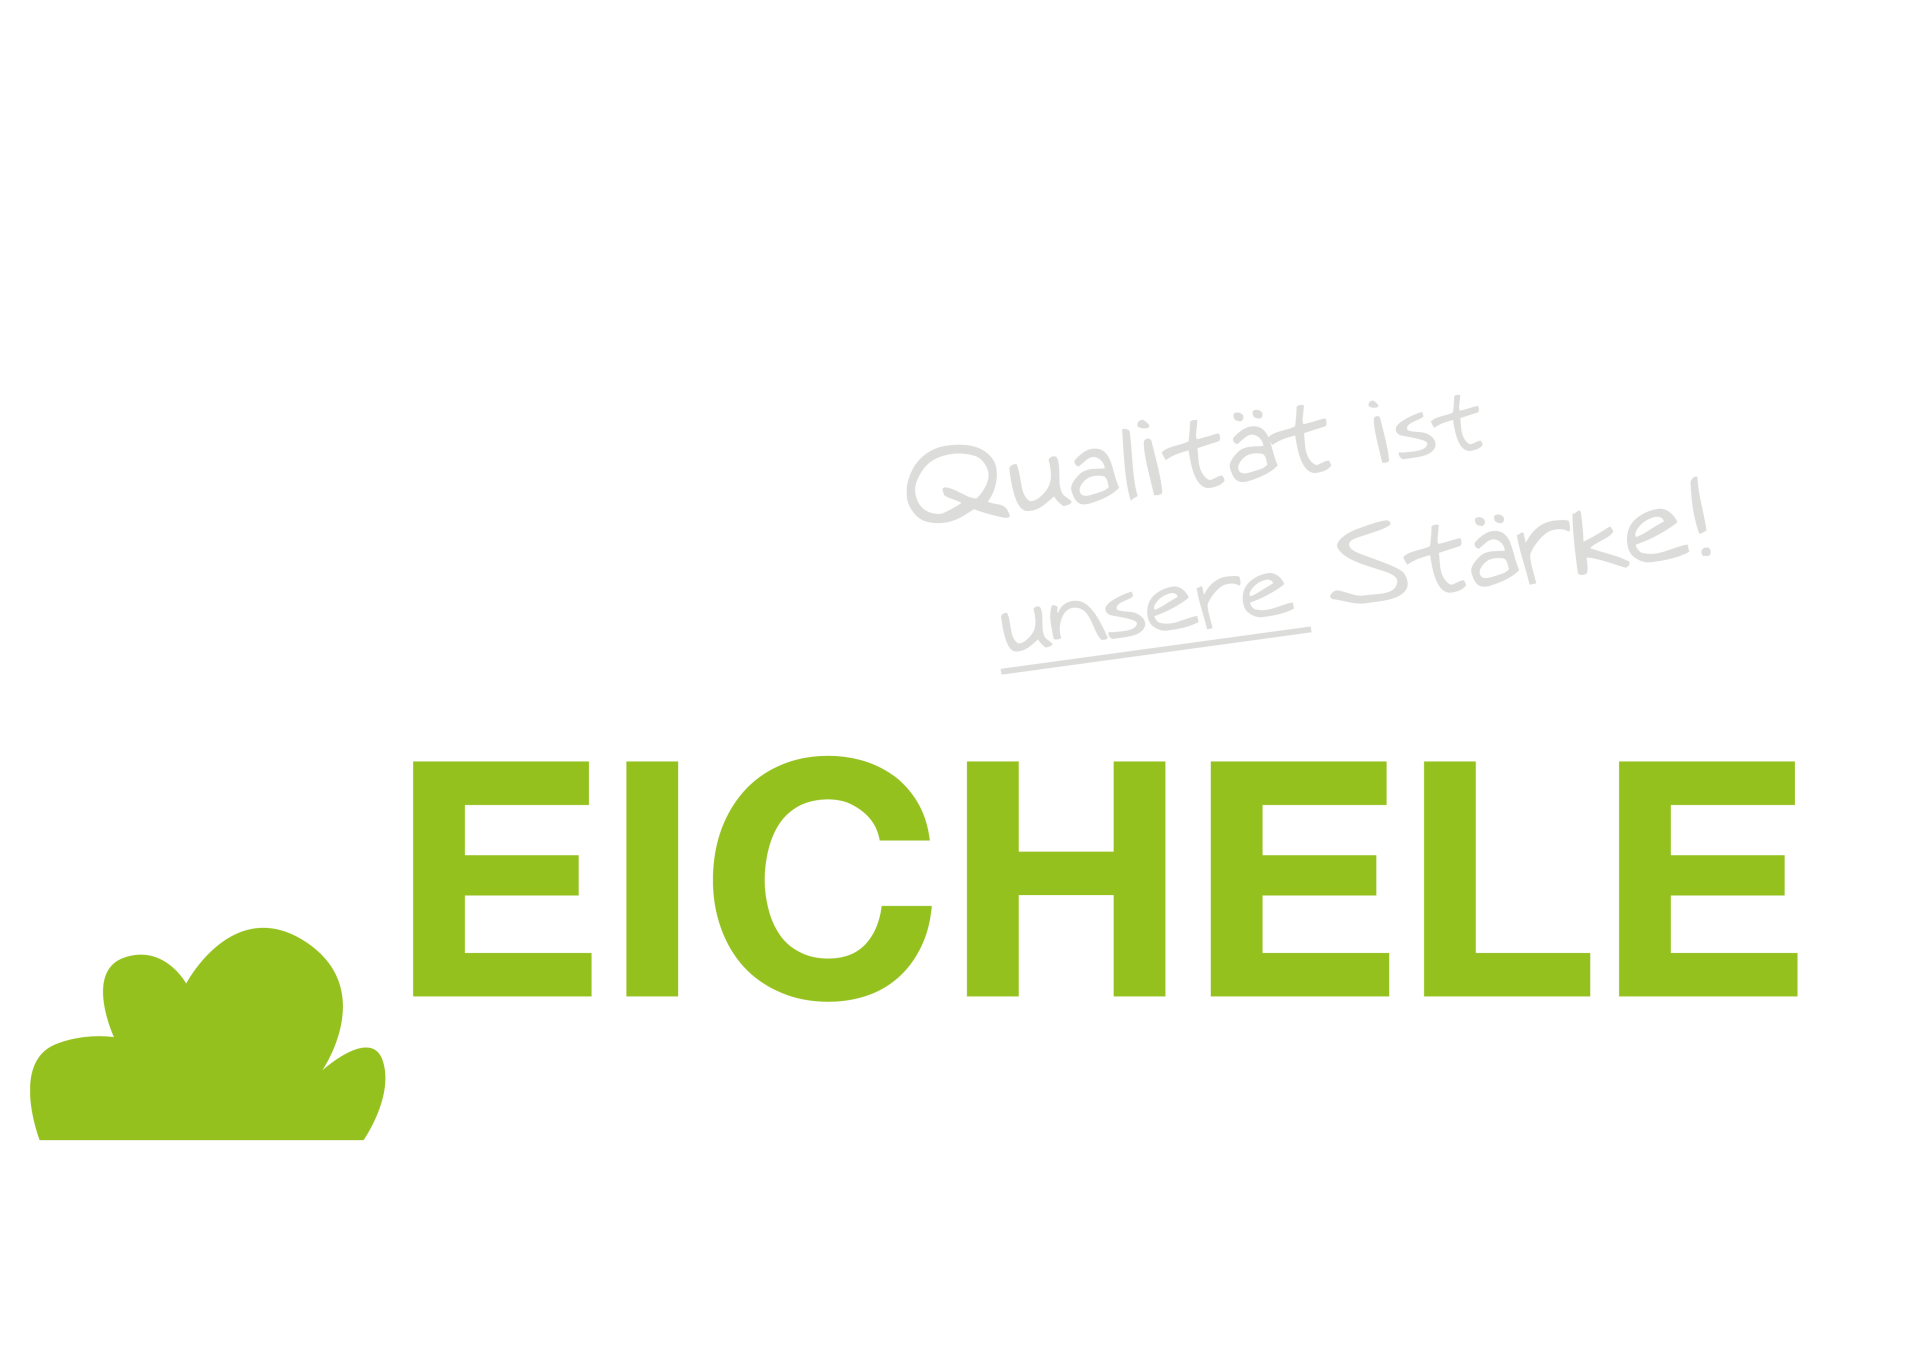 Eichele Haus-Hof-Garten, Bad Liebenzell, Gartenbau